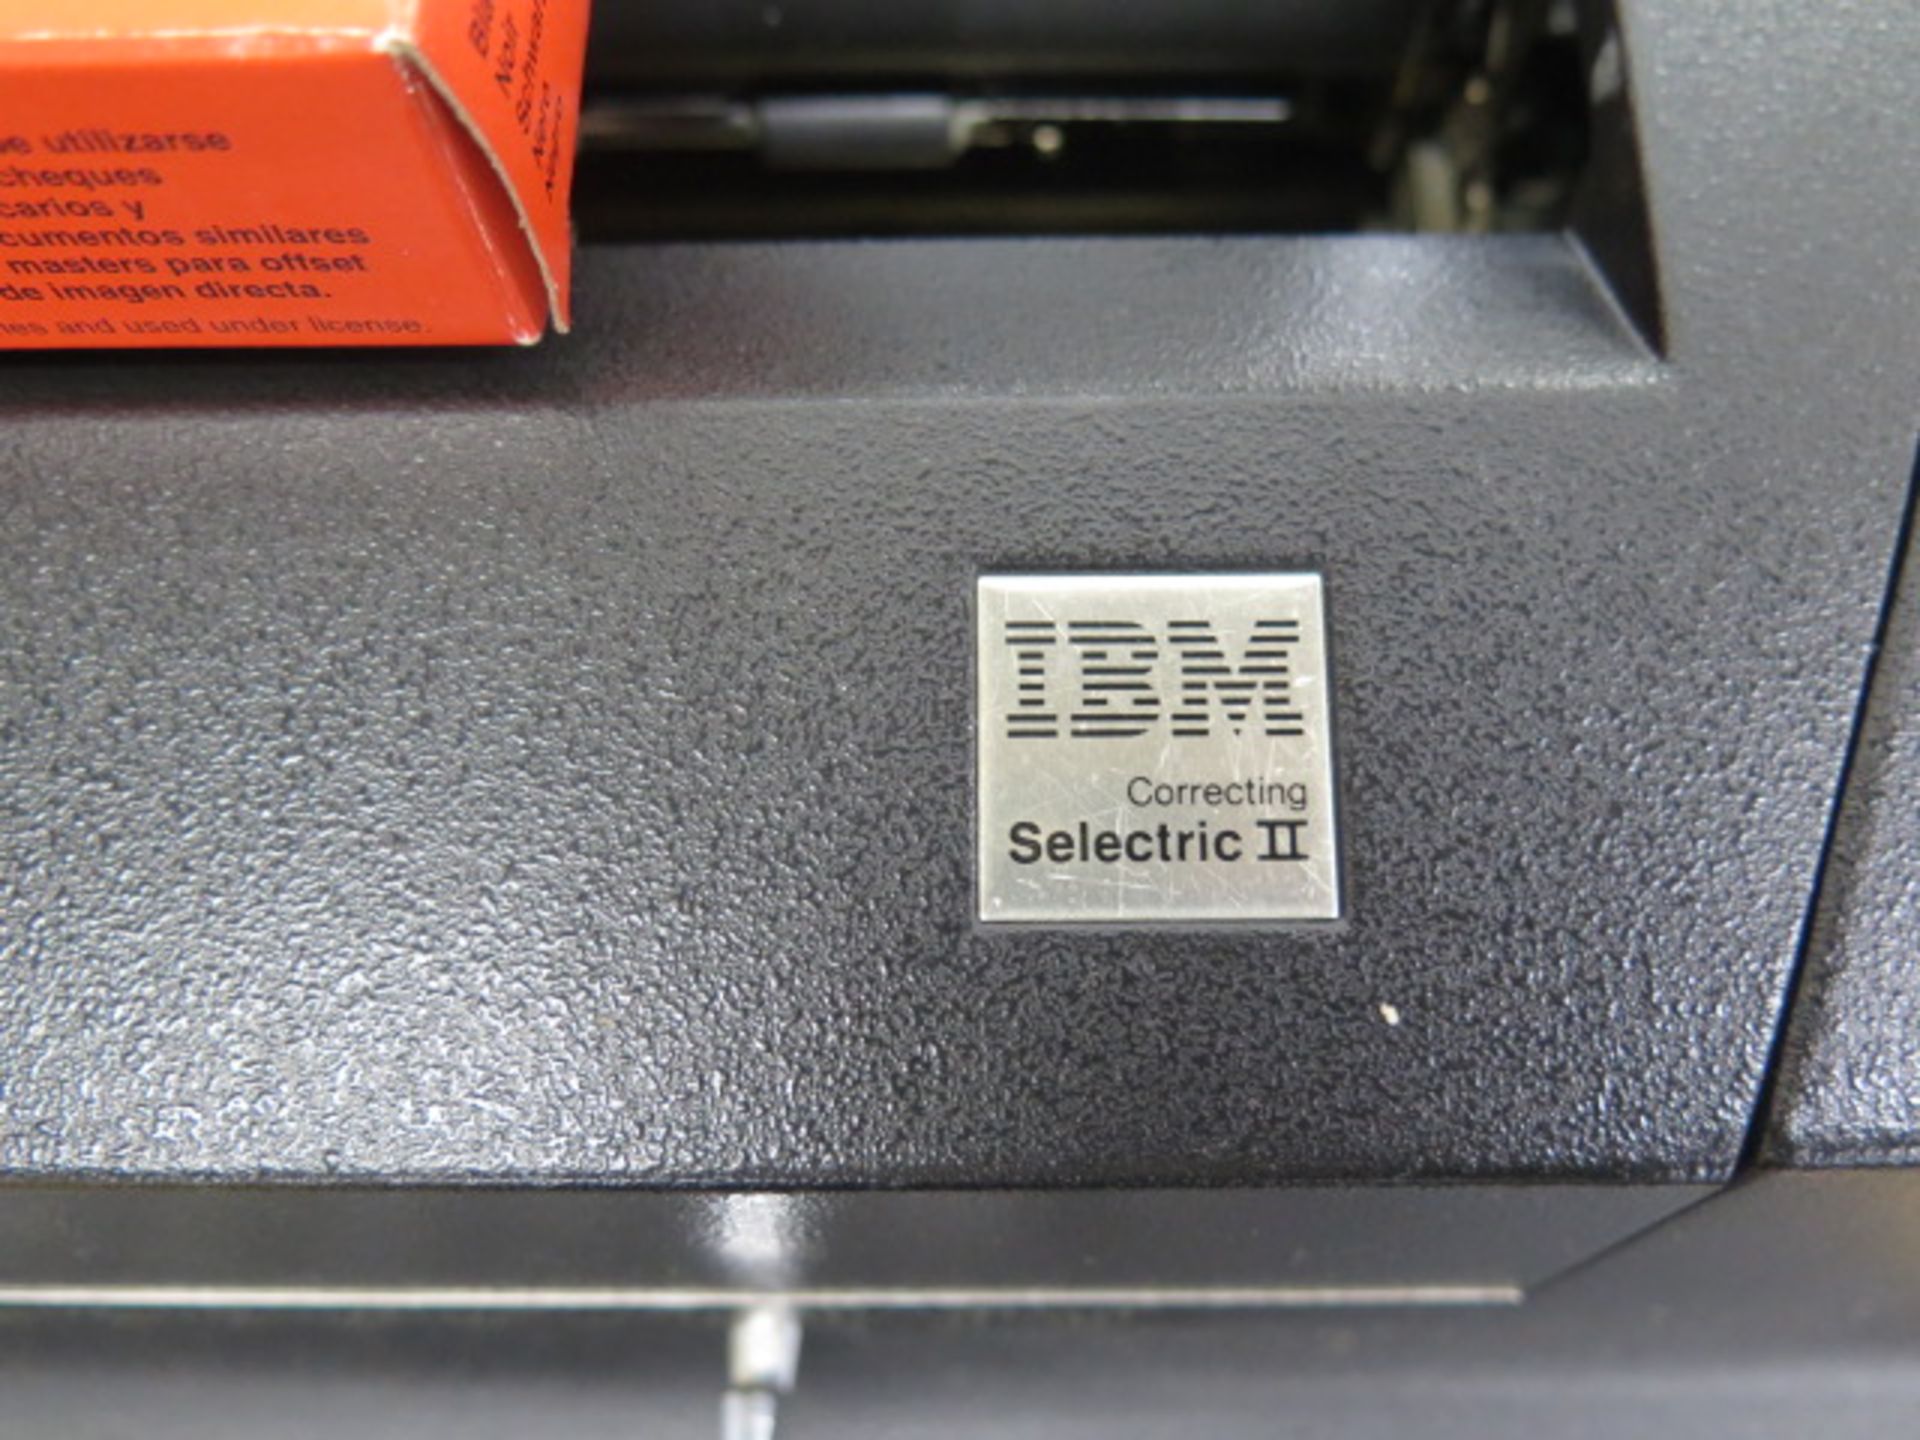 IBM Typewriter, HP Printer and Panasonic Dot-Matrix Printer (SOLD AS-IS - NO WARRANTY) - Image 3 of 4